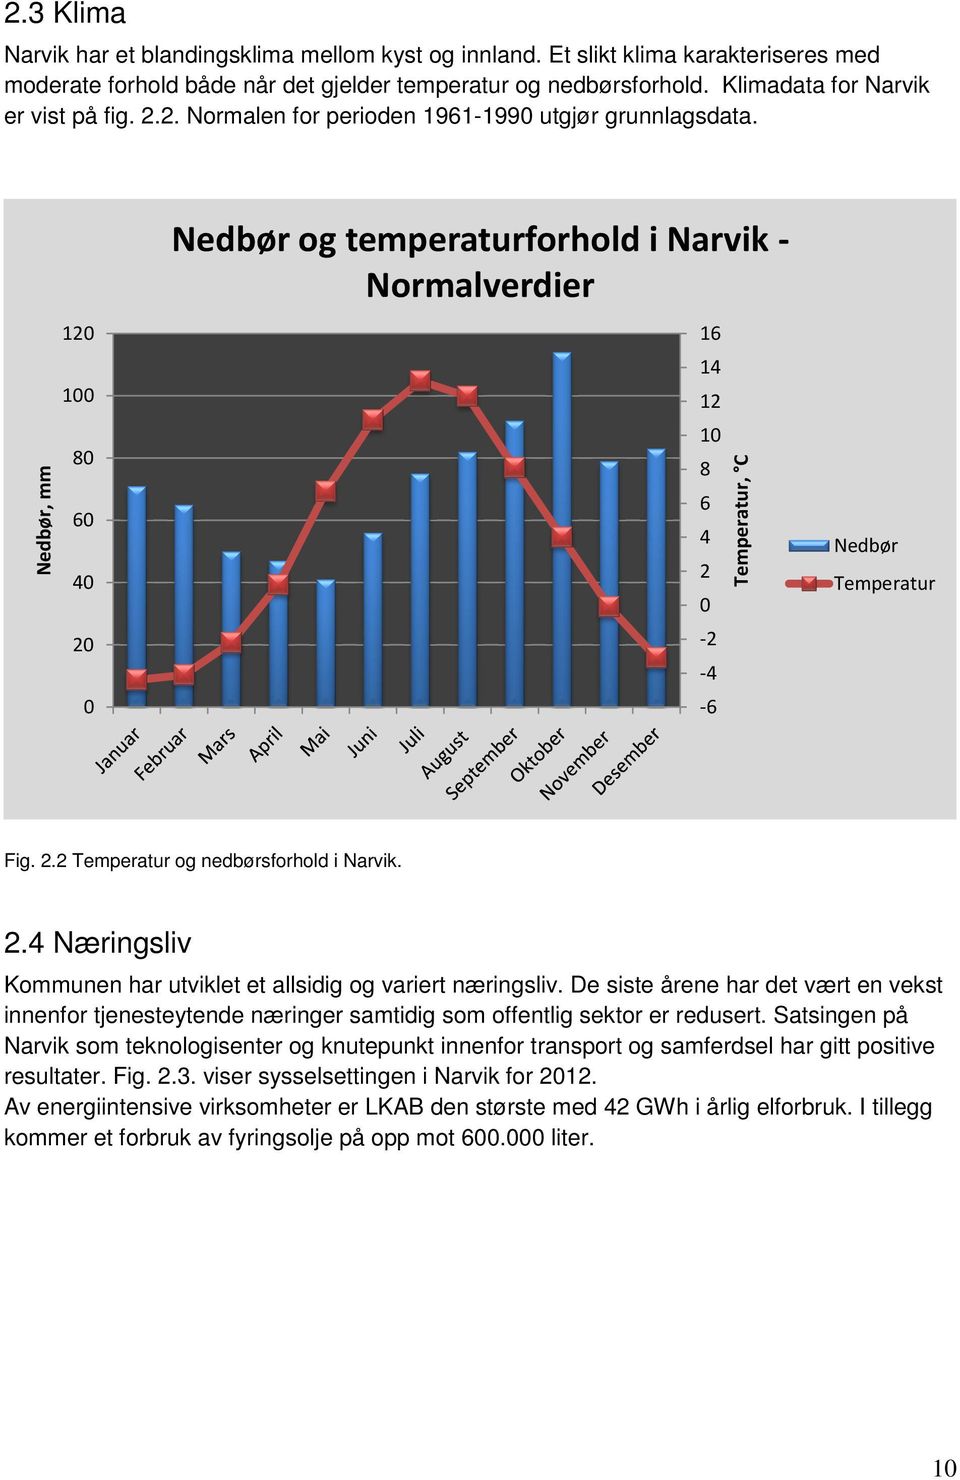 Nedbør, mm 120 100 80 60 40 20 0 Nedbør og temperaturforhold i Narvik - Normalverdier 16 14 12 10 8 6 4 2 0-2 -4-6 Temperatur, C Nedbør Temperatur Fig. 2.2 Temperatur og nedbørsforhold i Narvik. 2.4 Næringsliv Kommunen har utviklet et allsidig og variert næringsliv.